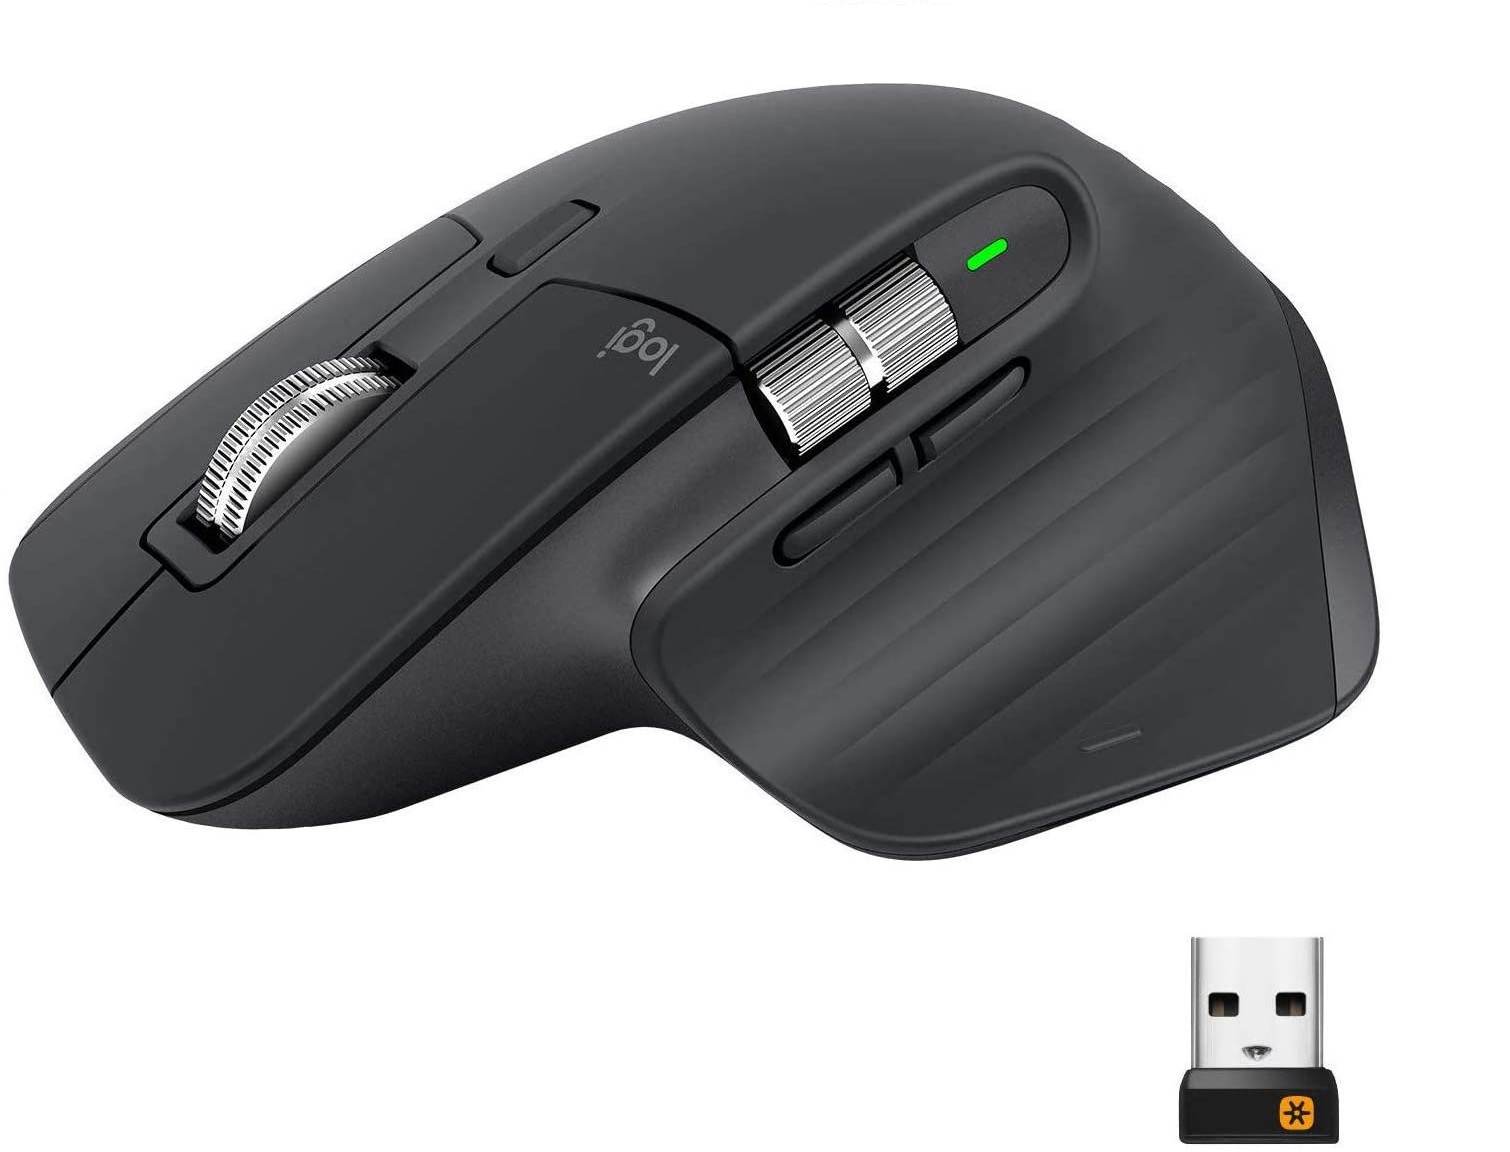 Mouse Inalámbrico - Logitech MX Master 3 / 910-005647 | 2109 - Mouse Inalámbrico, Sensor Darkfield, Receptor Unifying, 4000 dpi, Botones: 7, Rueda de desplazamiento, Botón rueda para el pulgar, Botón de gestos, Bluetooth, Cobertura: 10 m, Batería recargab